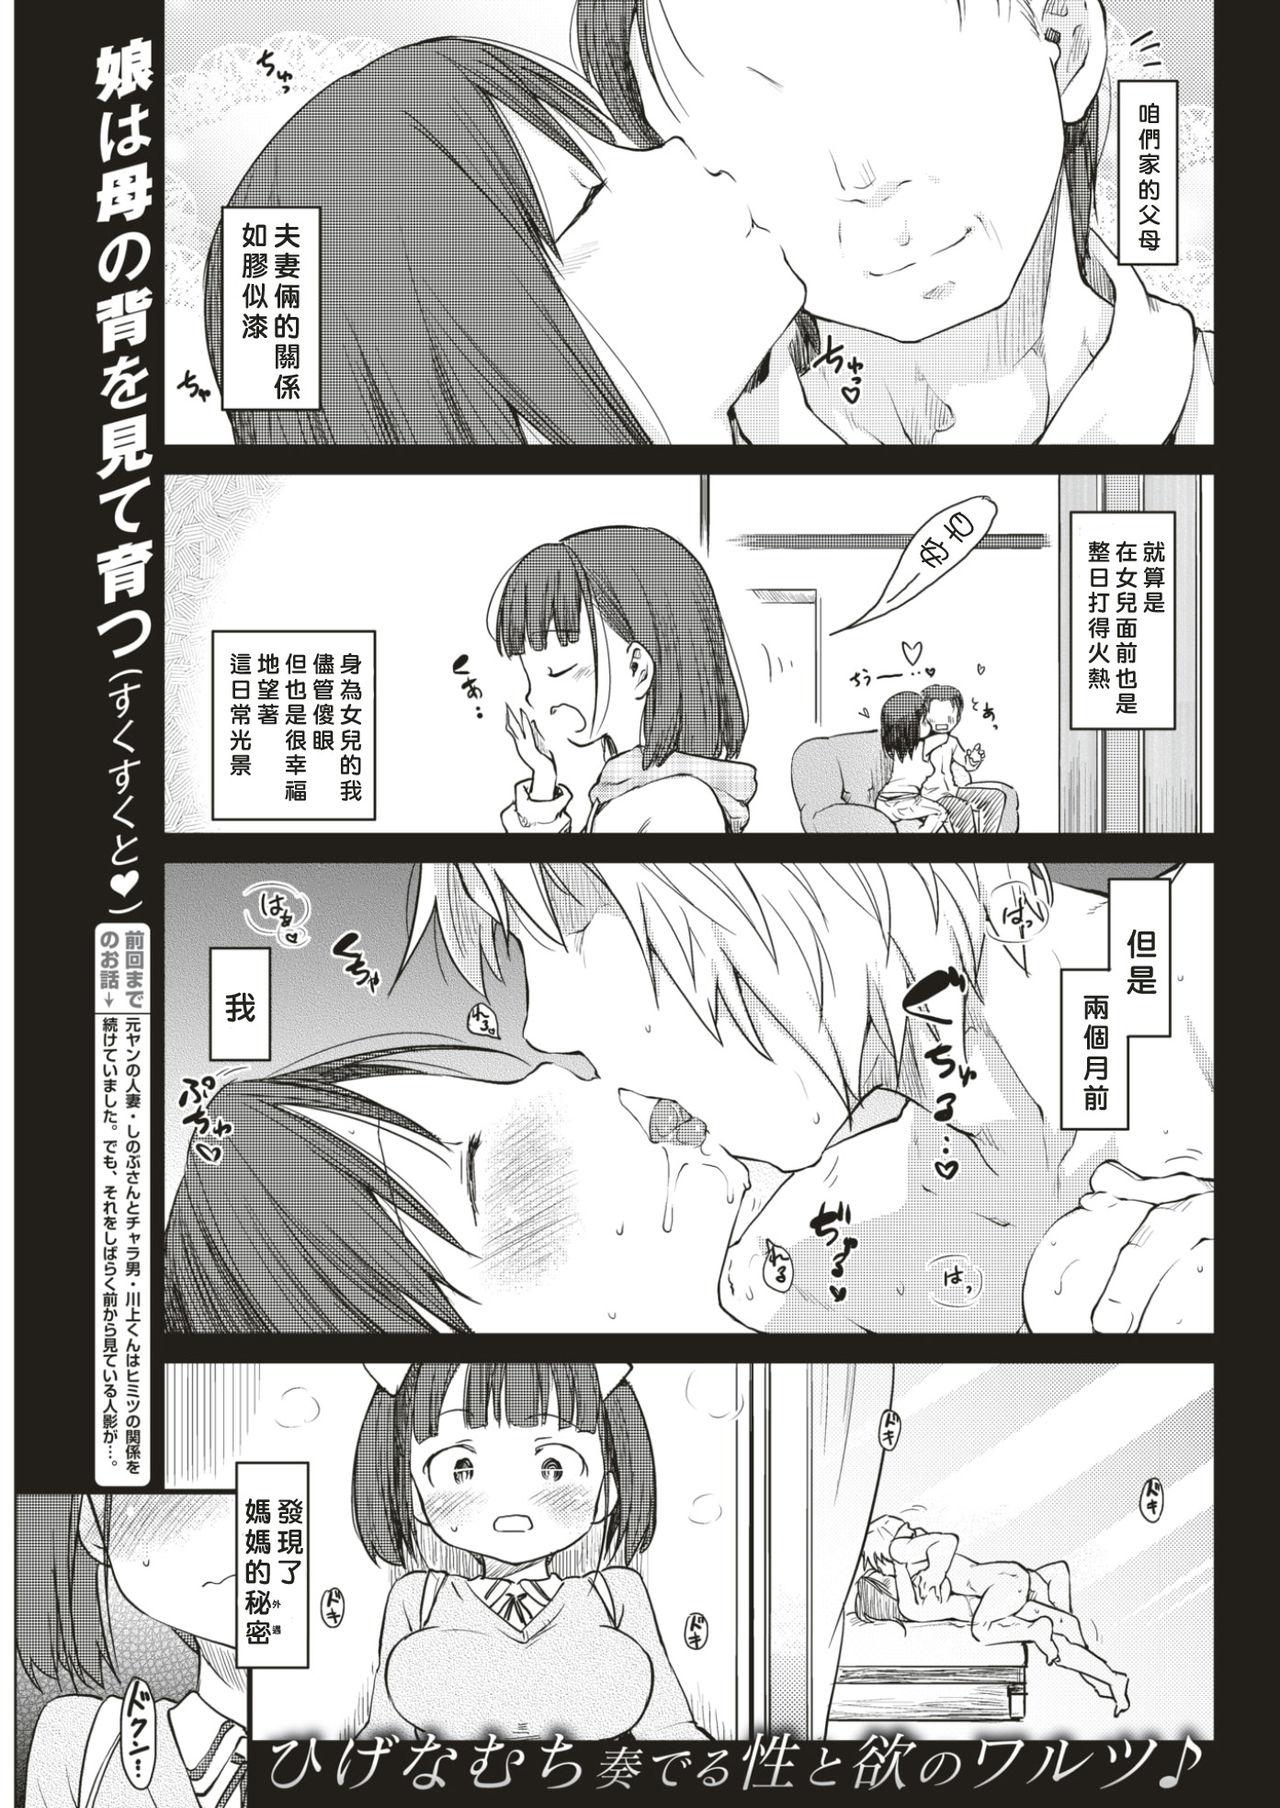 Teentube Katsura-sanchi no Oyako Kankei T Girl - Page 1